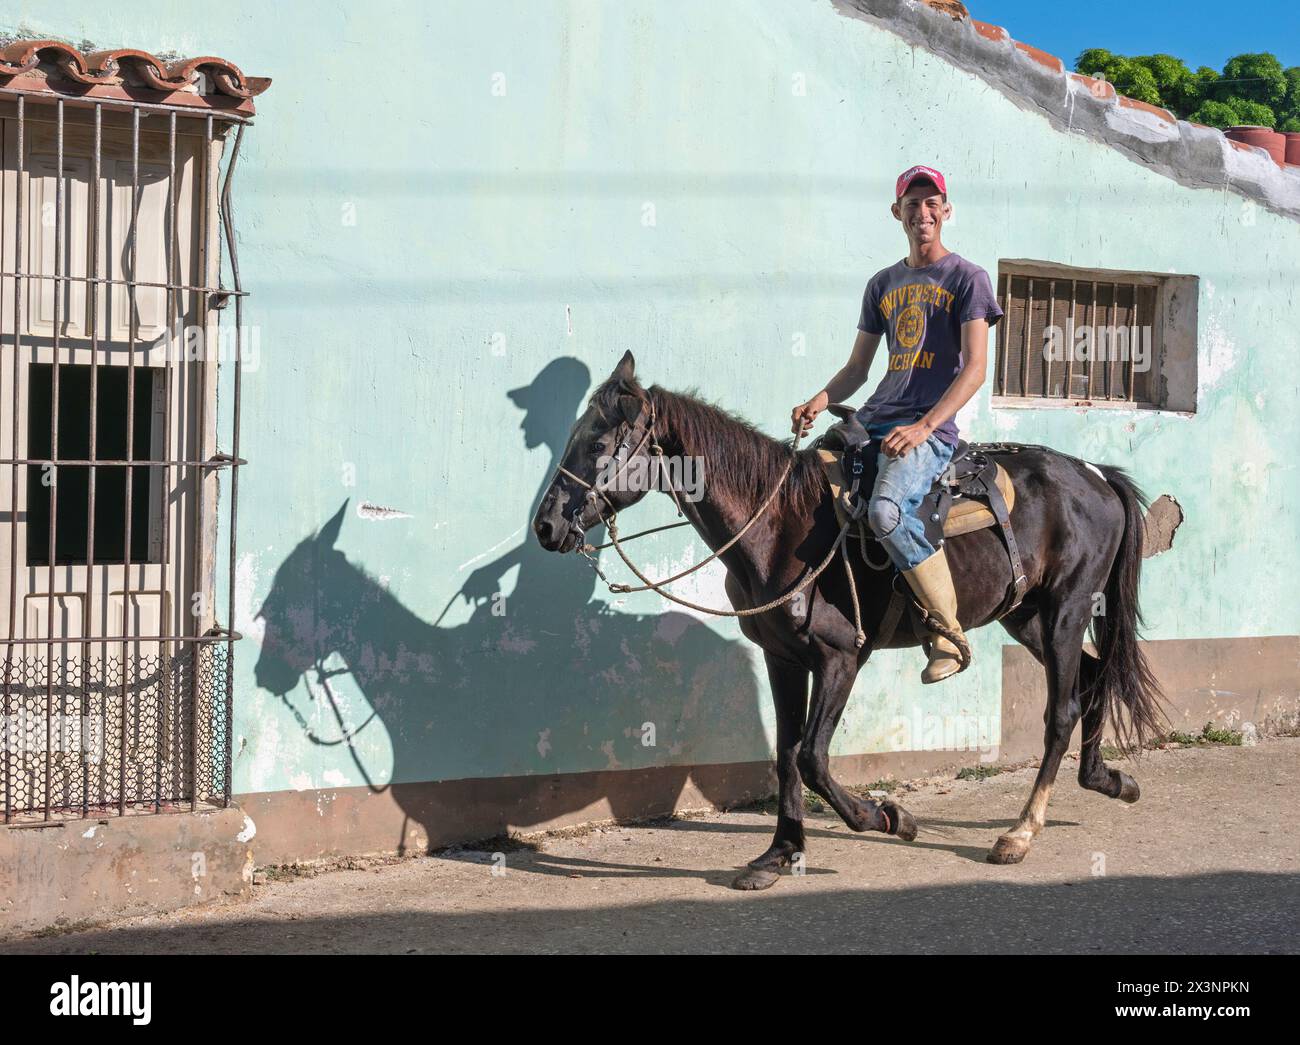 Un local qui monte son cheval dans les rues latérales de la vieille ville, Trinidad, Cuba Banque D'Images